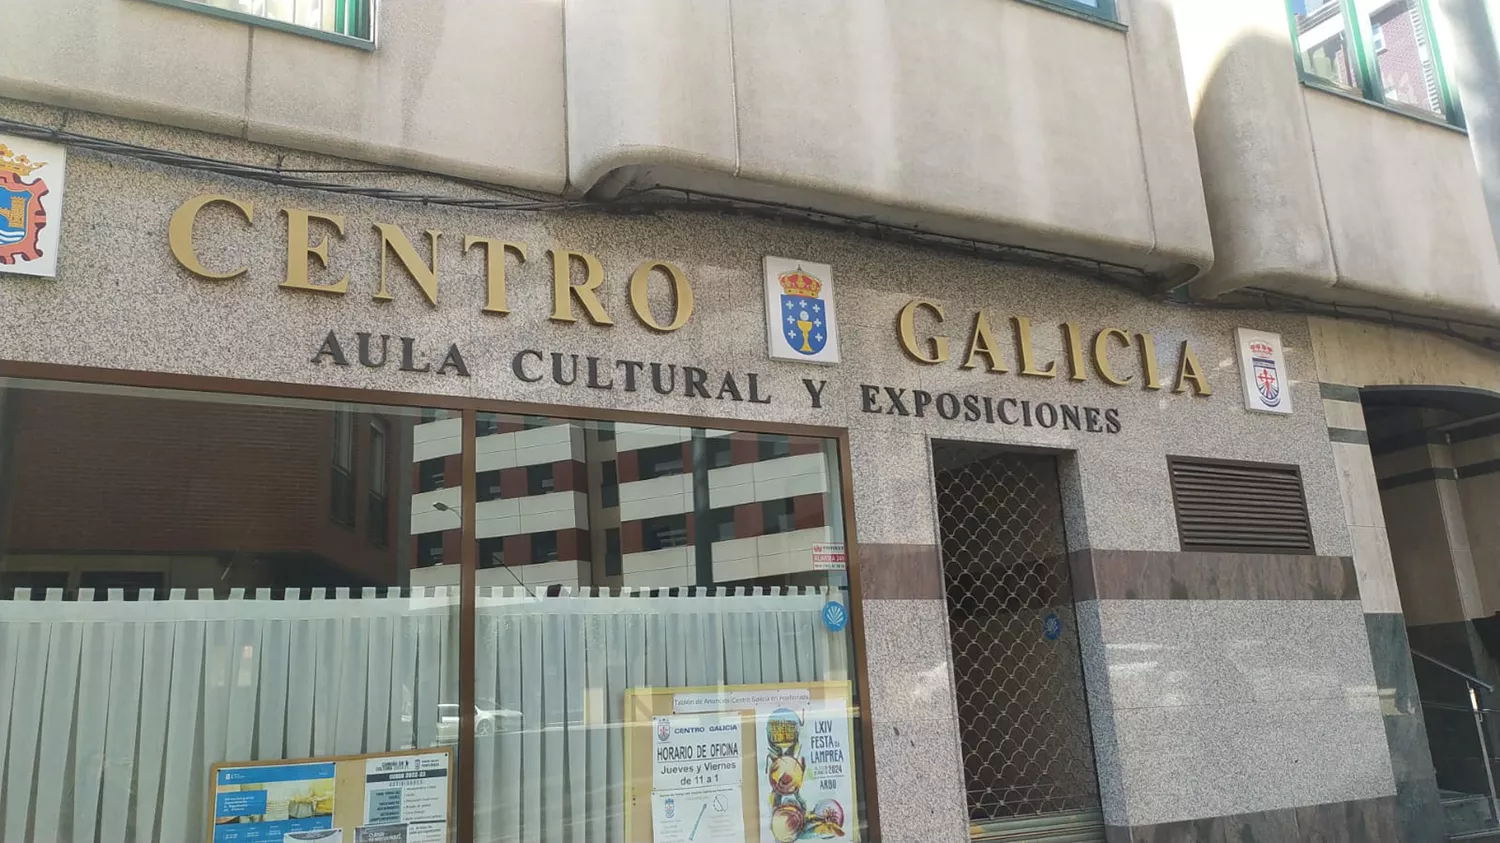 El mítico Centro Galicia busca "relevo generacional" ante el miedo a su desaparición en Ponferrada